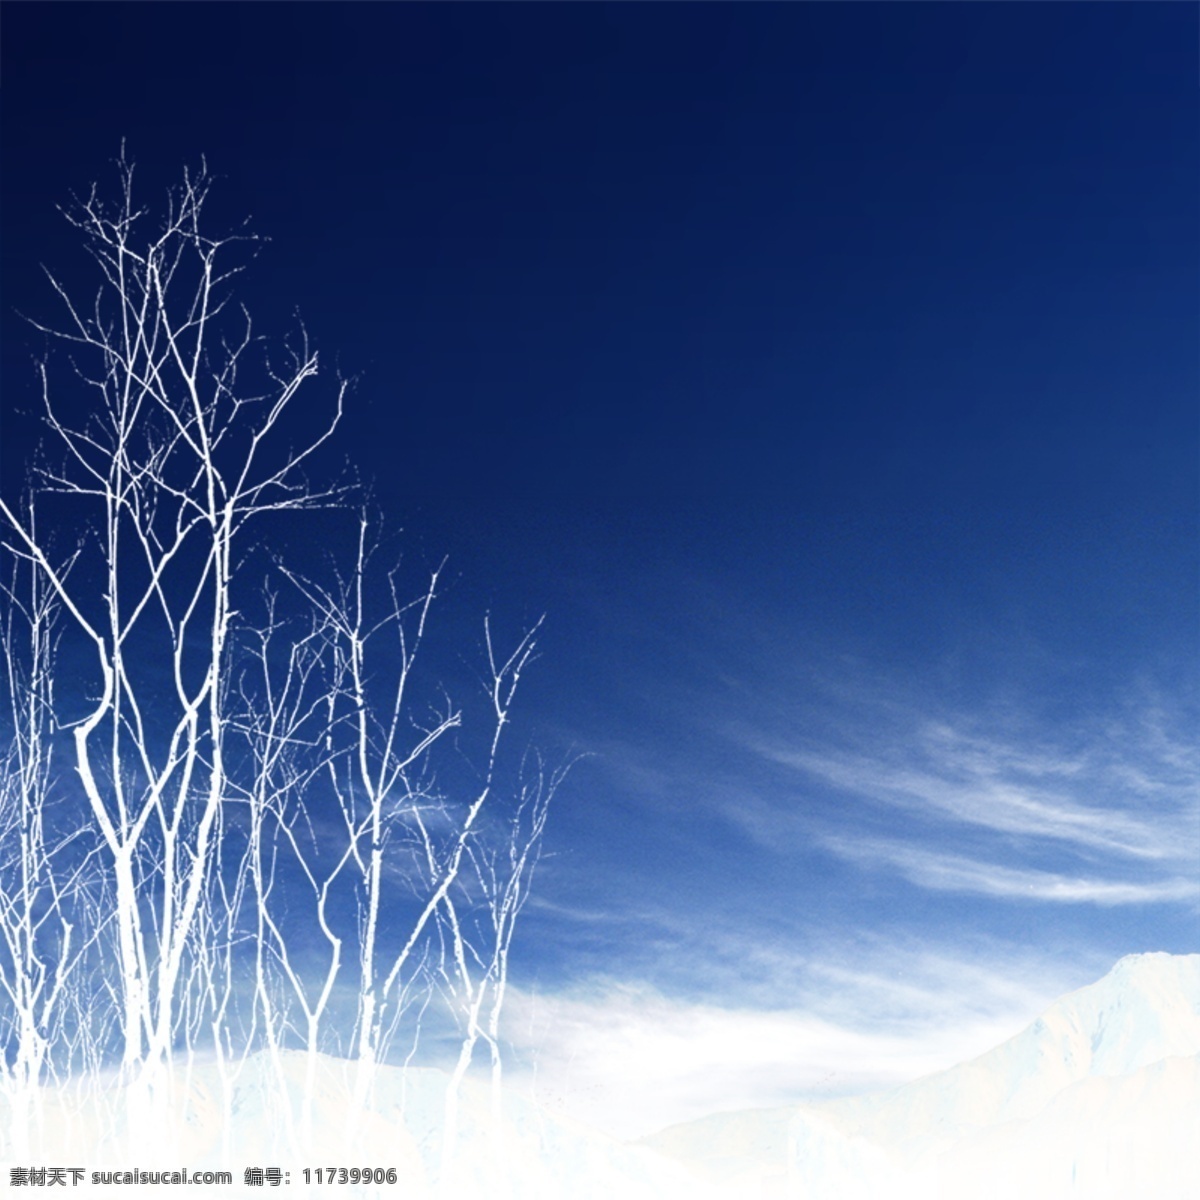 冬季背景 冬季插画 冬天 广告设计模板 源文件 冬季 氛围 模板下载 冬季氛围 写意背景 蓝色